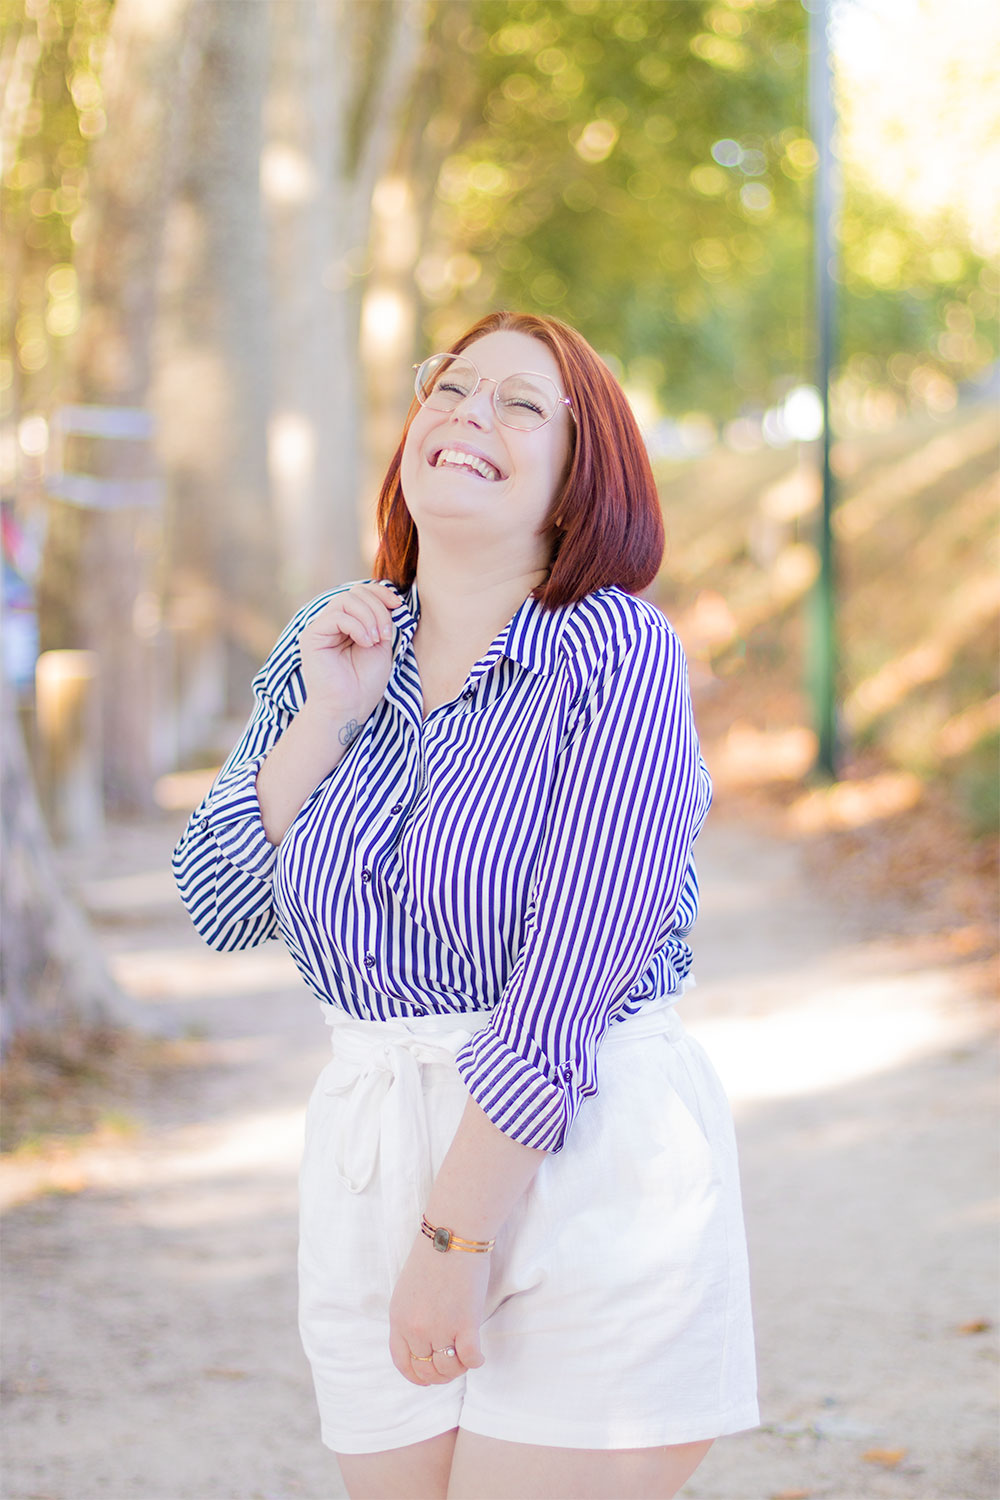 Chemise rayée et short blanc en lin, dans un décor boisé, avec le sourire